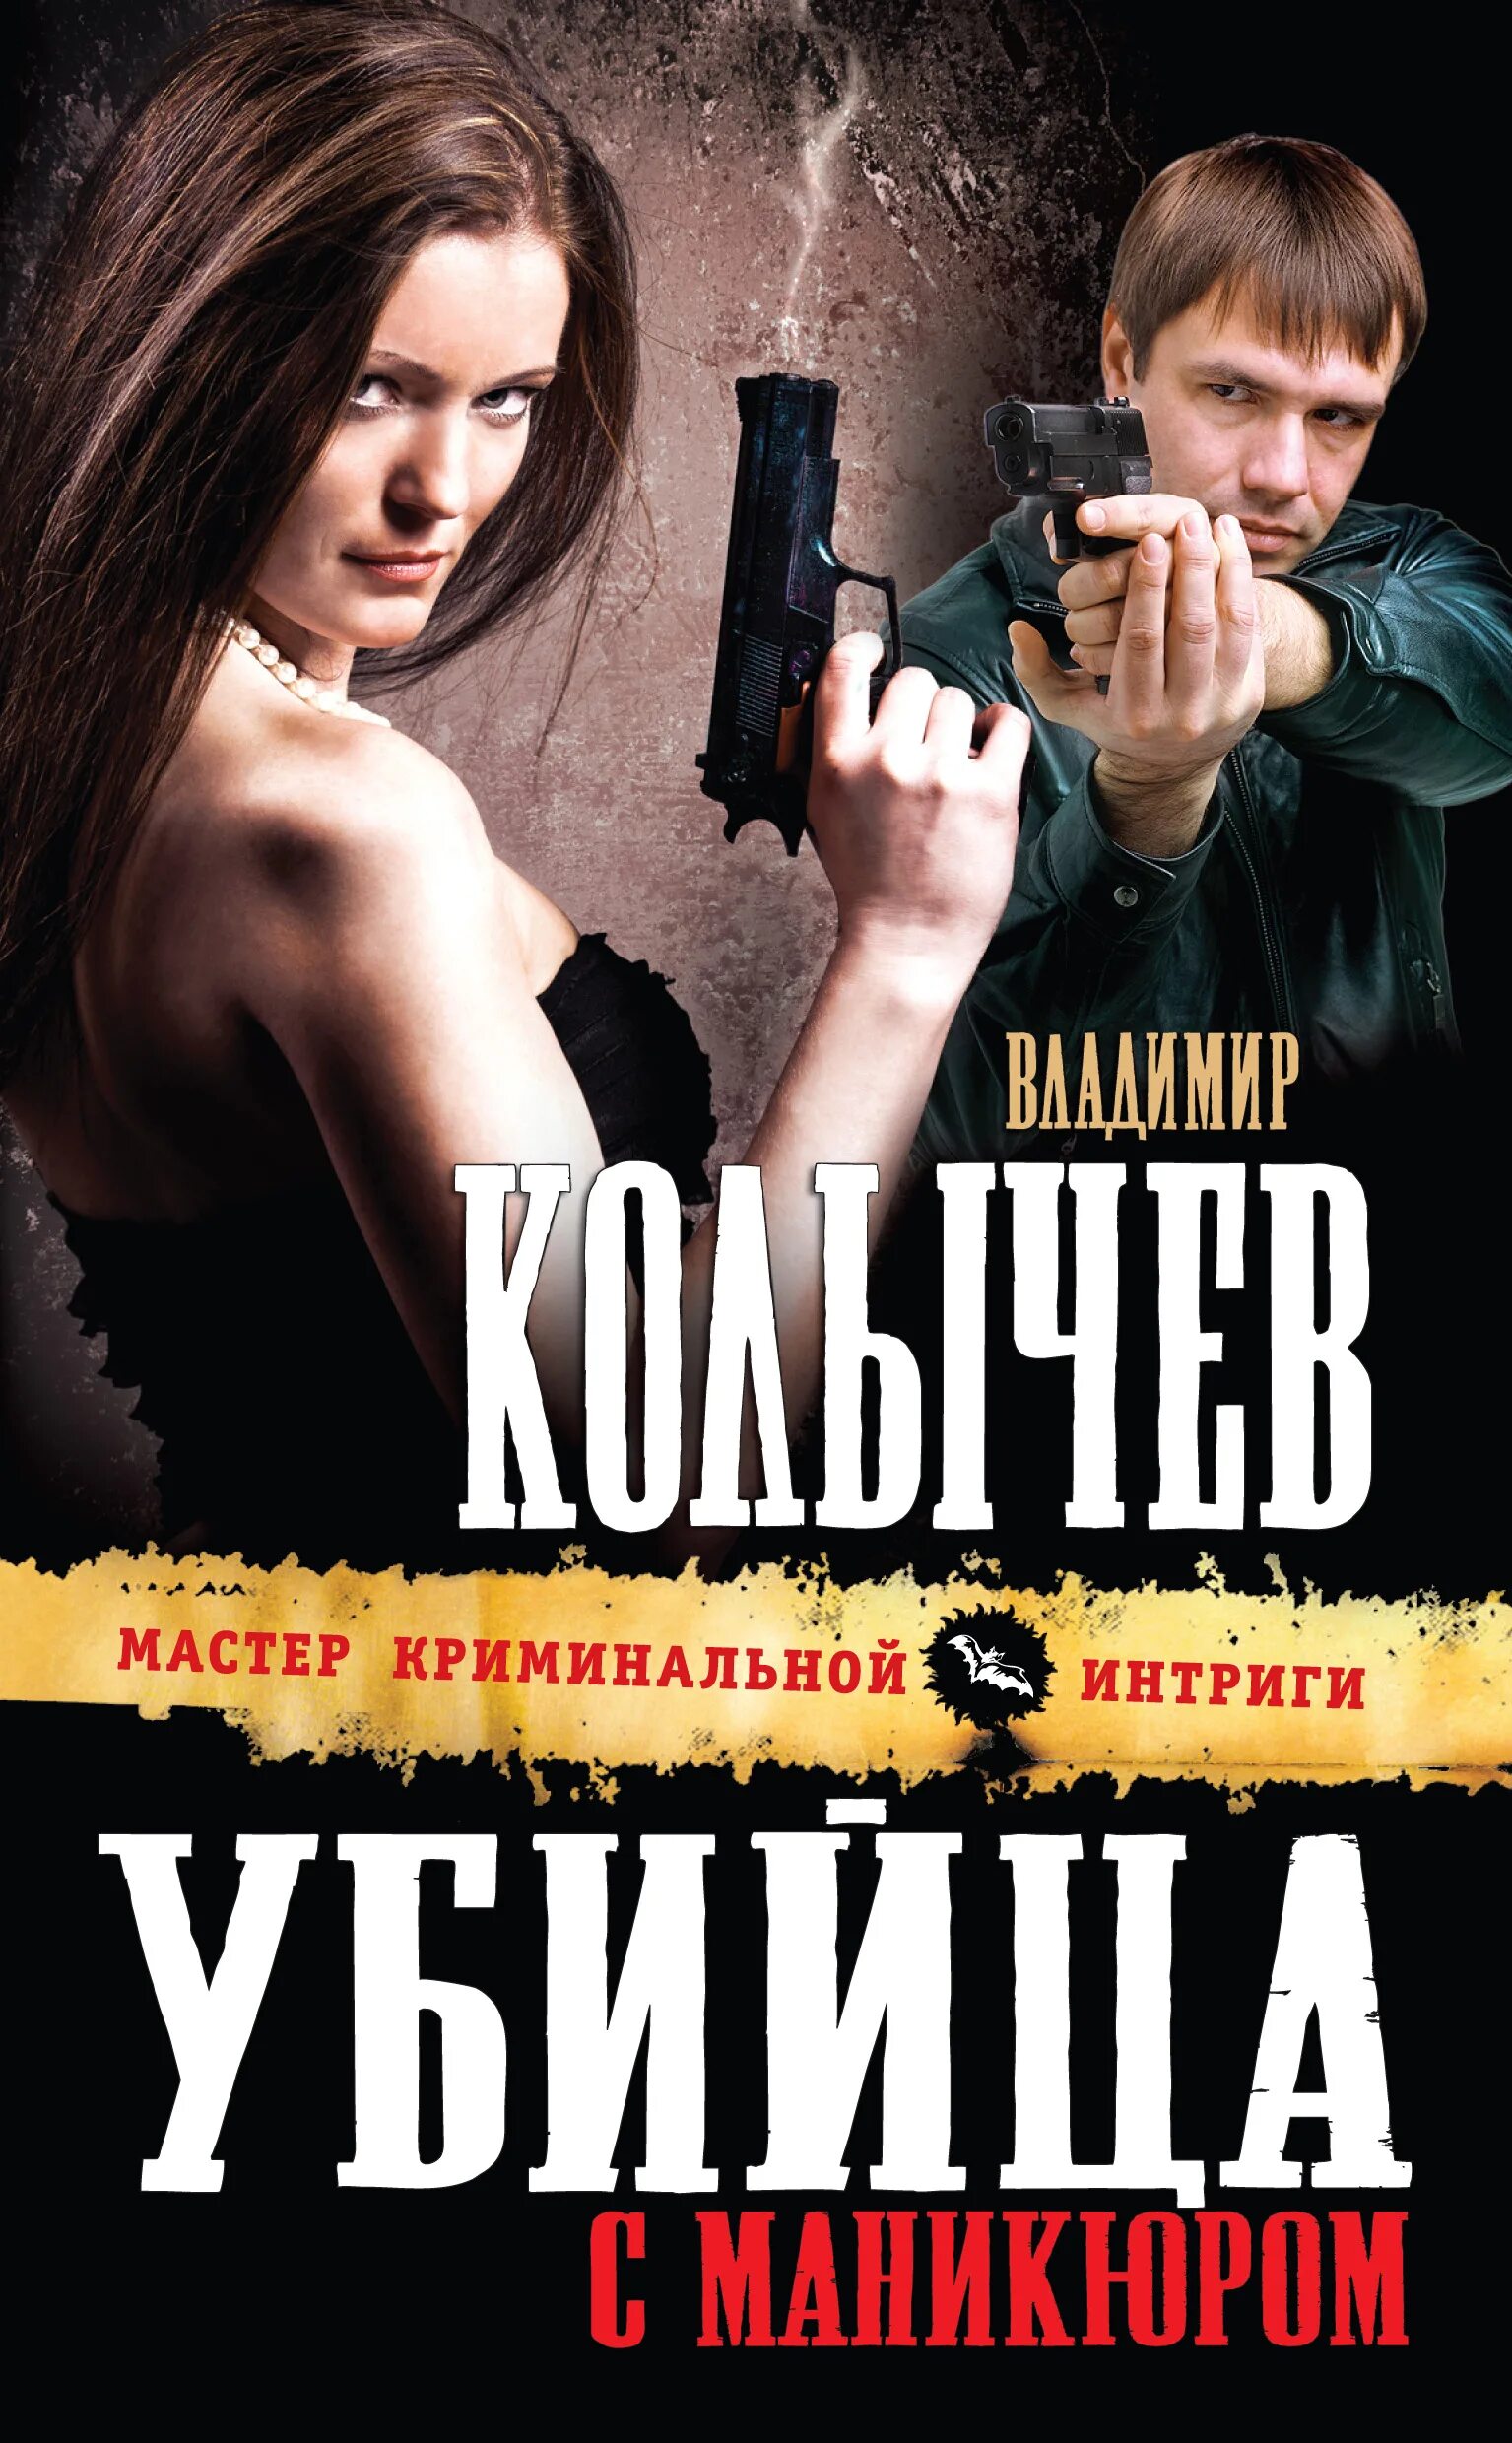 Книга про убийцу девушку. Книги о убийцах детективы. Читать про криминал